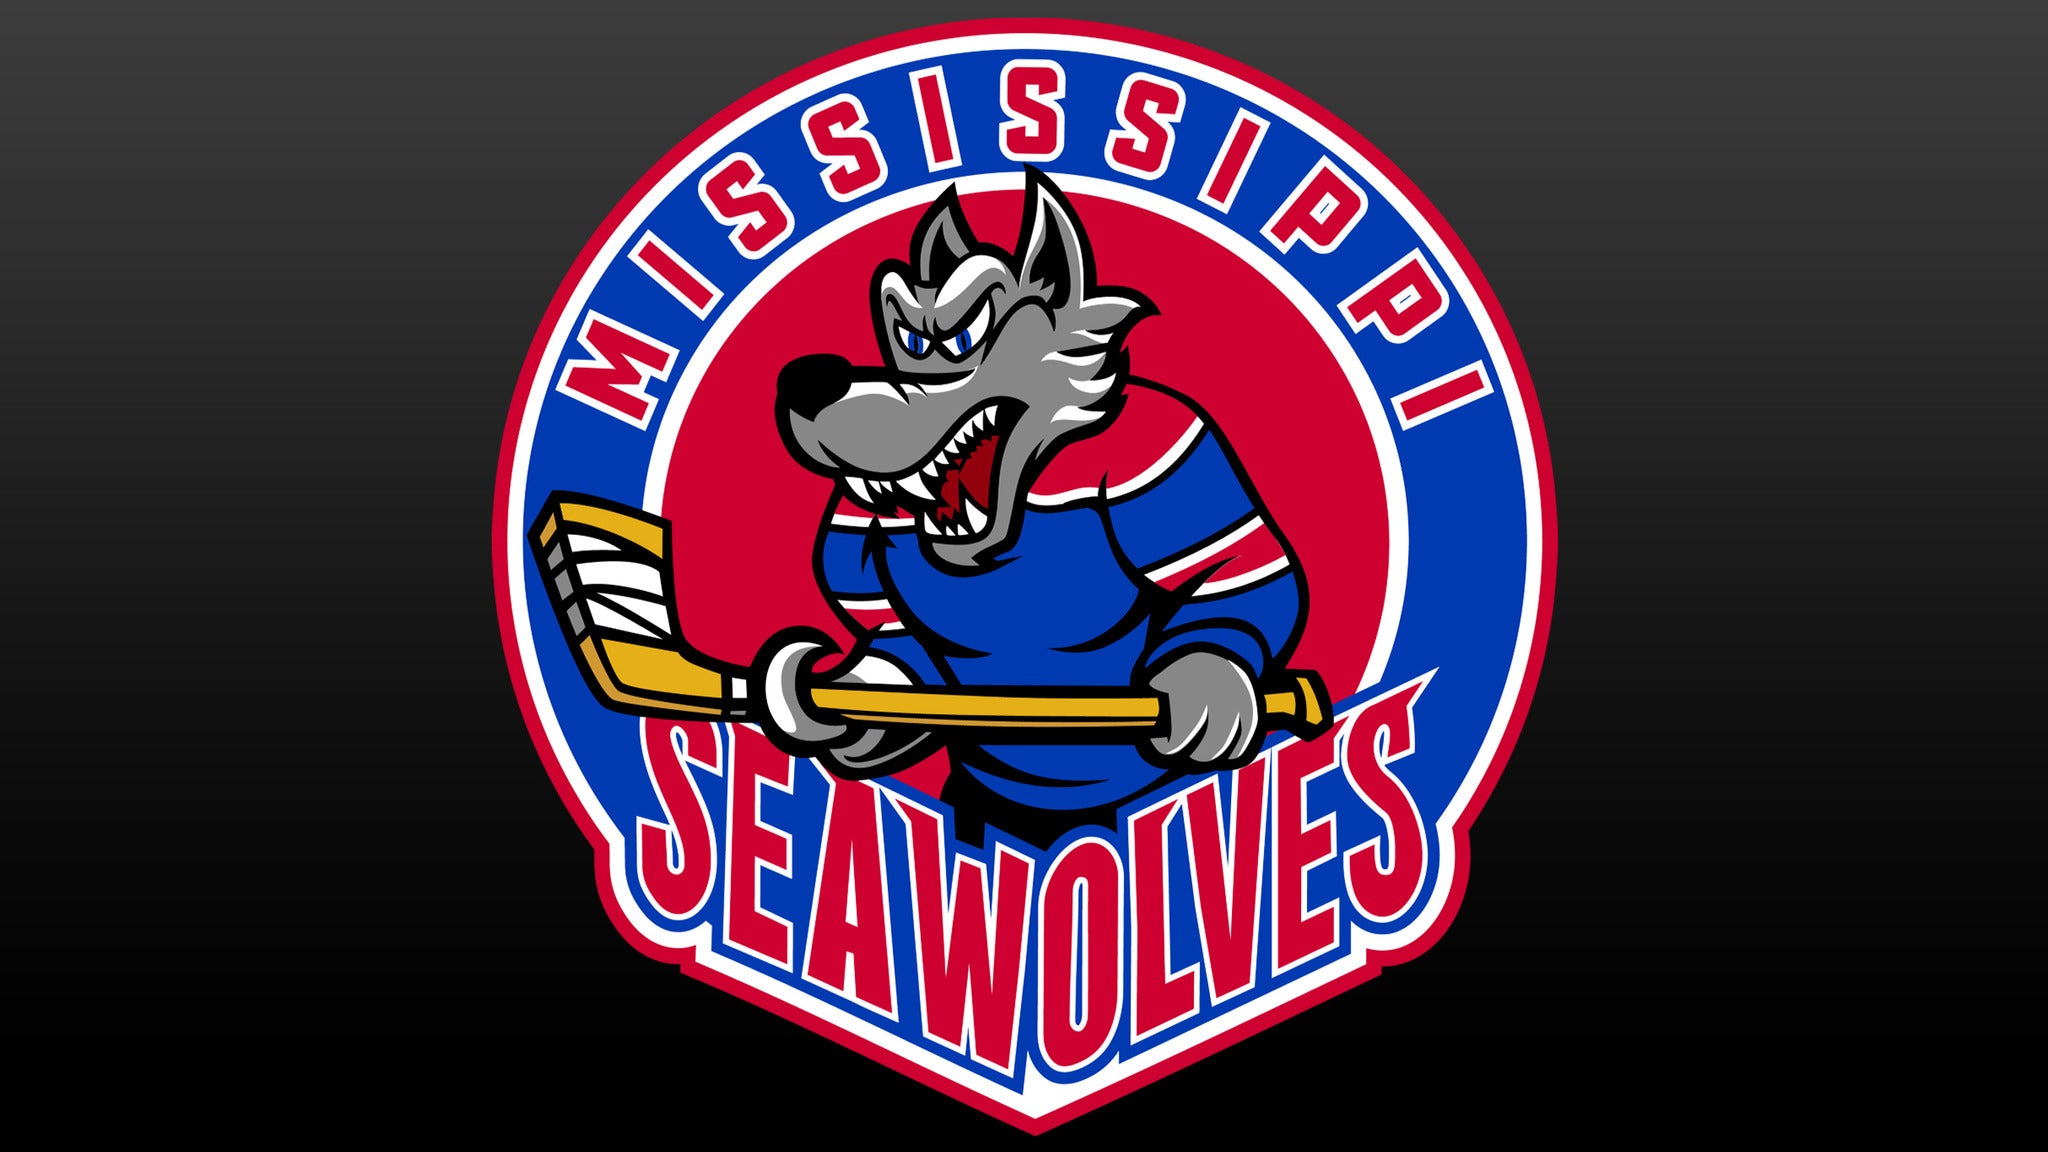 Mississippi Sea Wolves presale information on freepresalepasswords.com